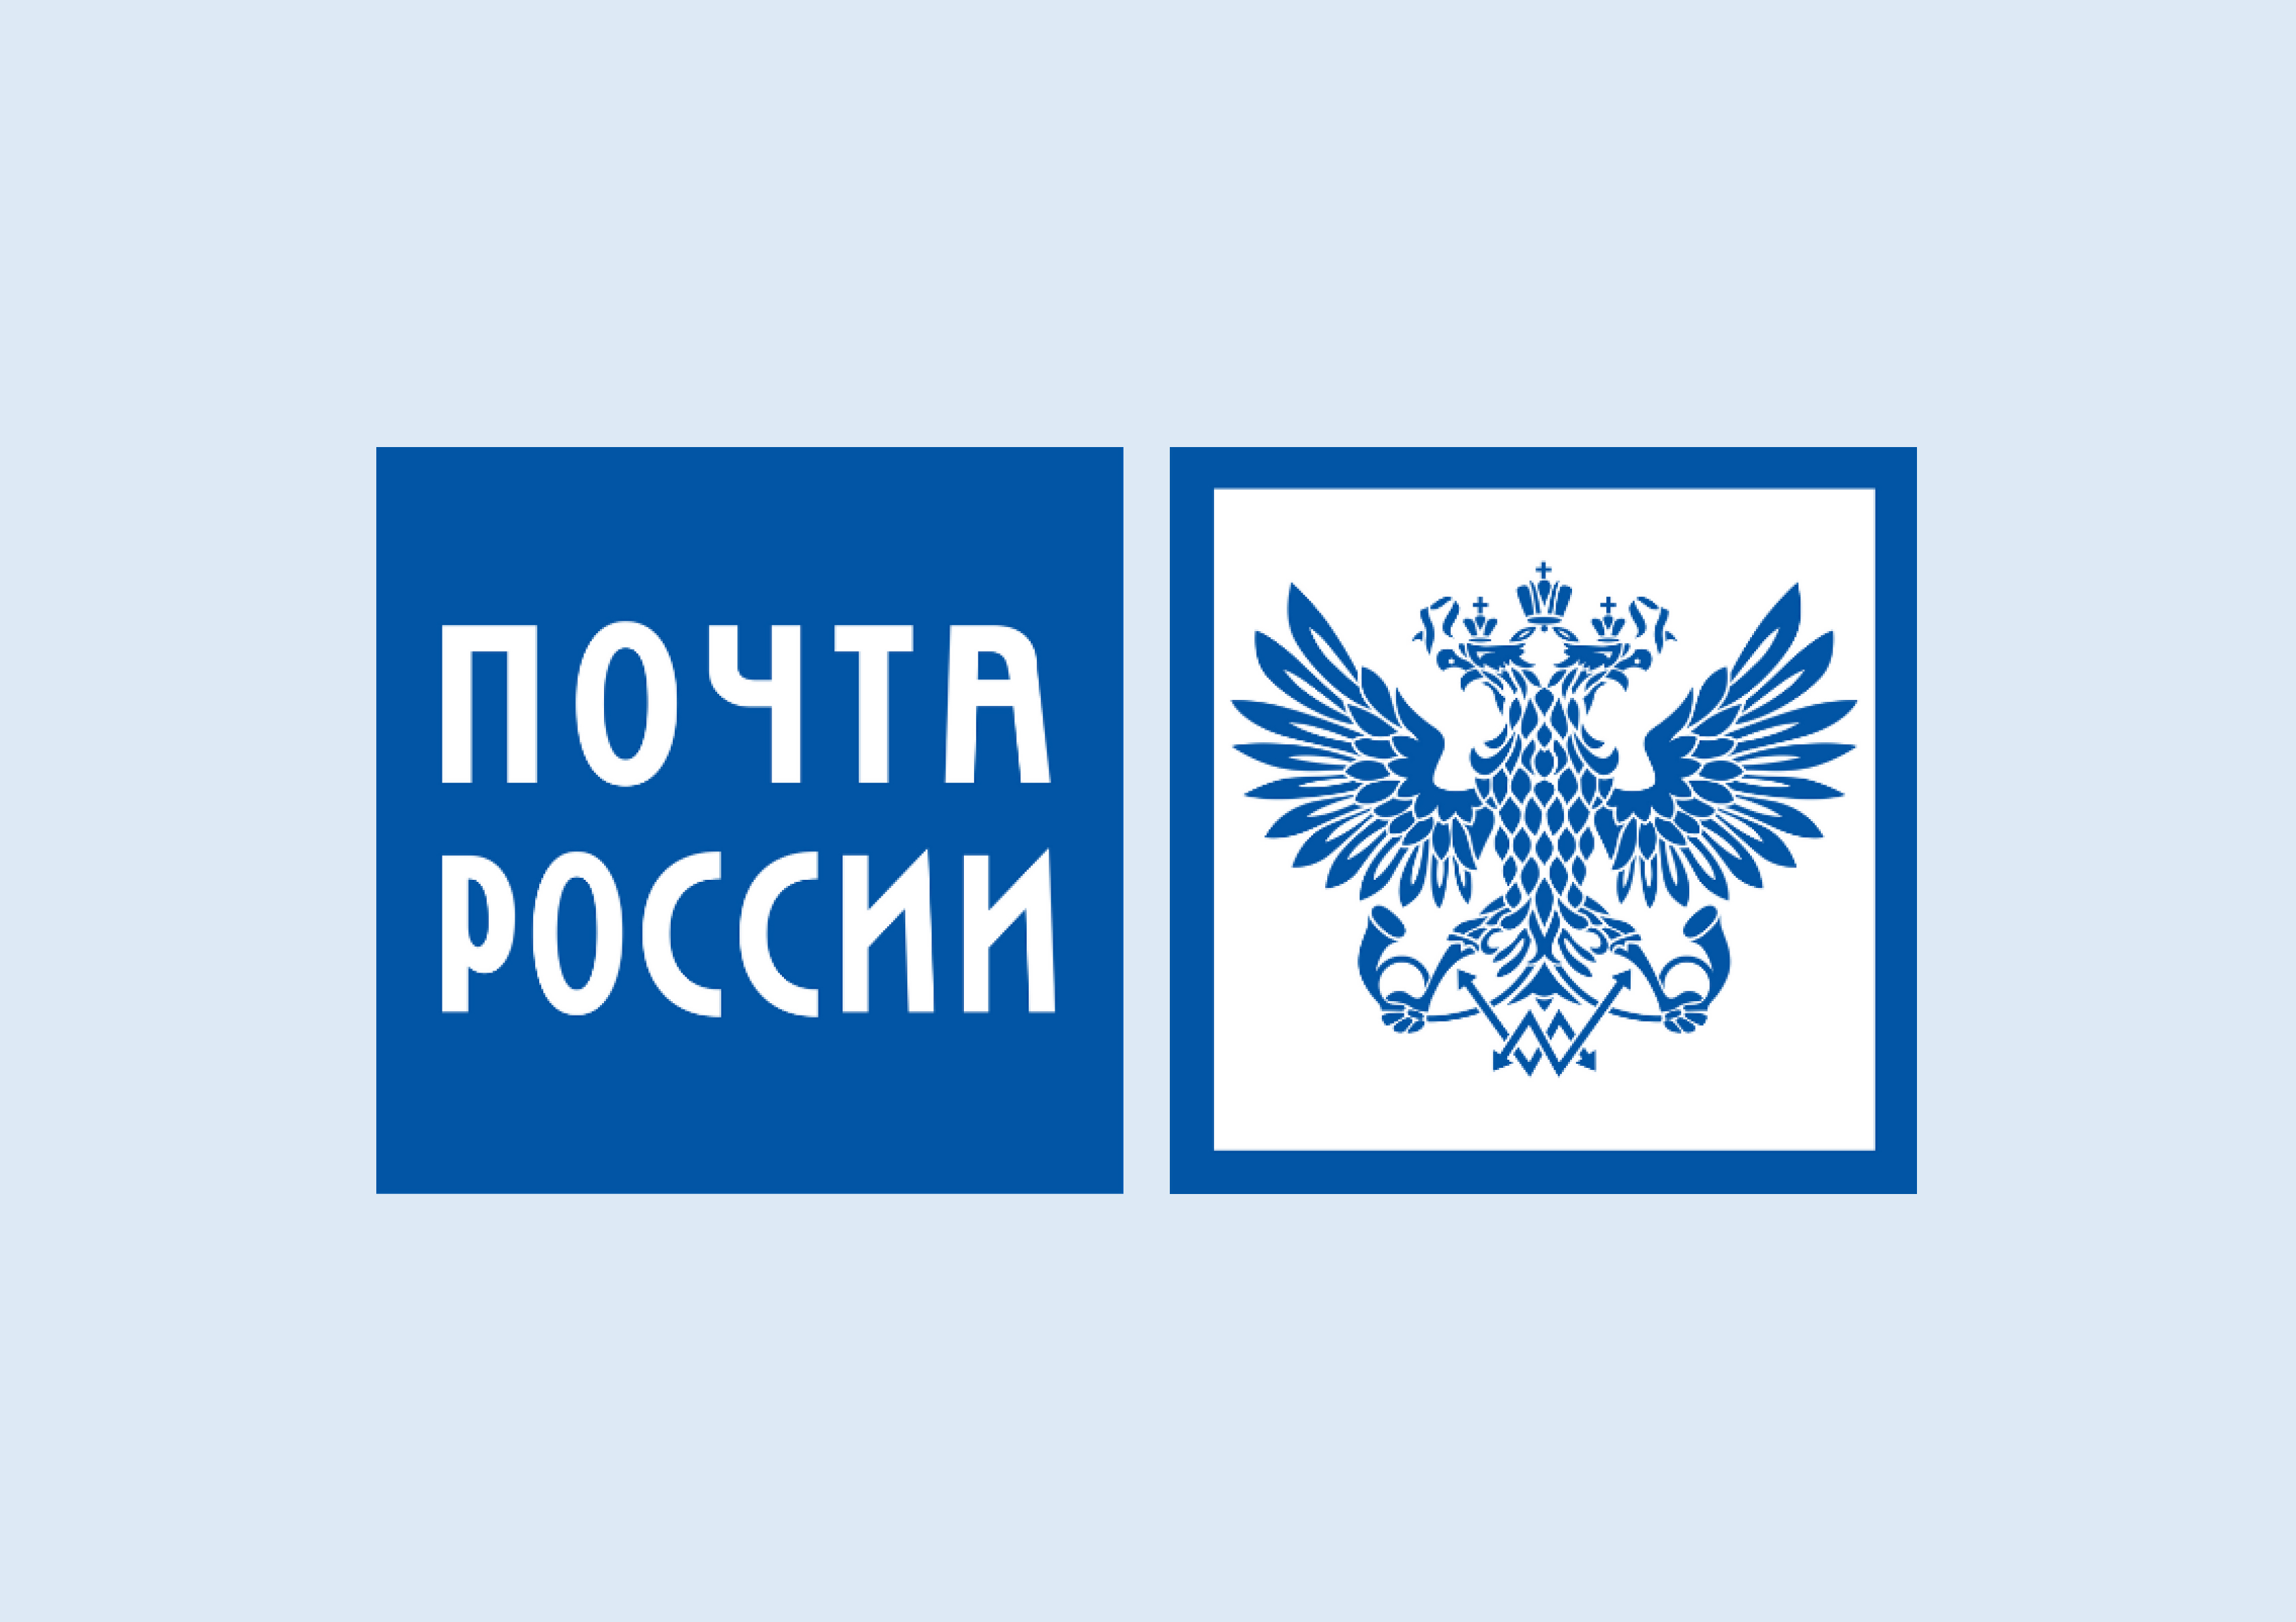 Почта России предлагает оформить подписку со скидкой до 30%.